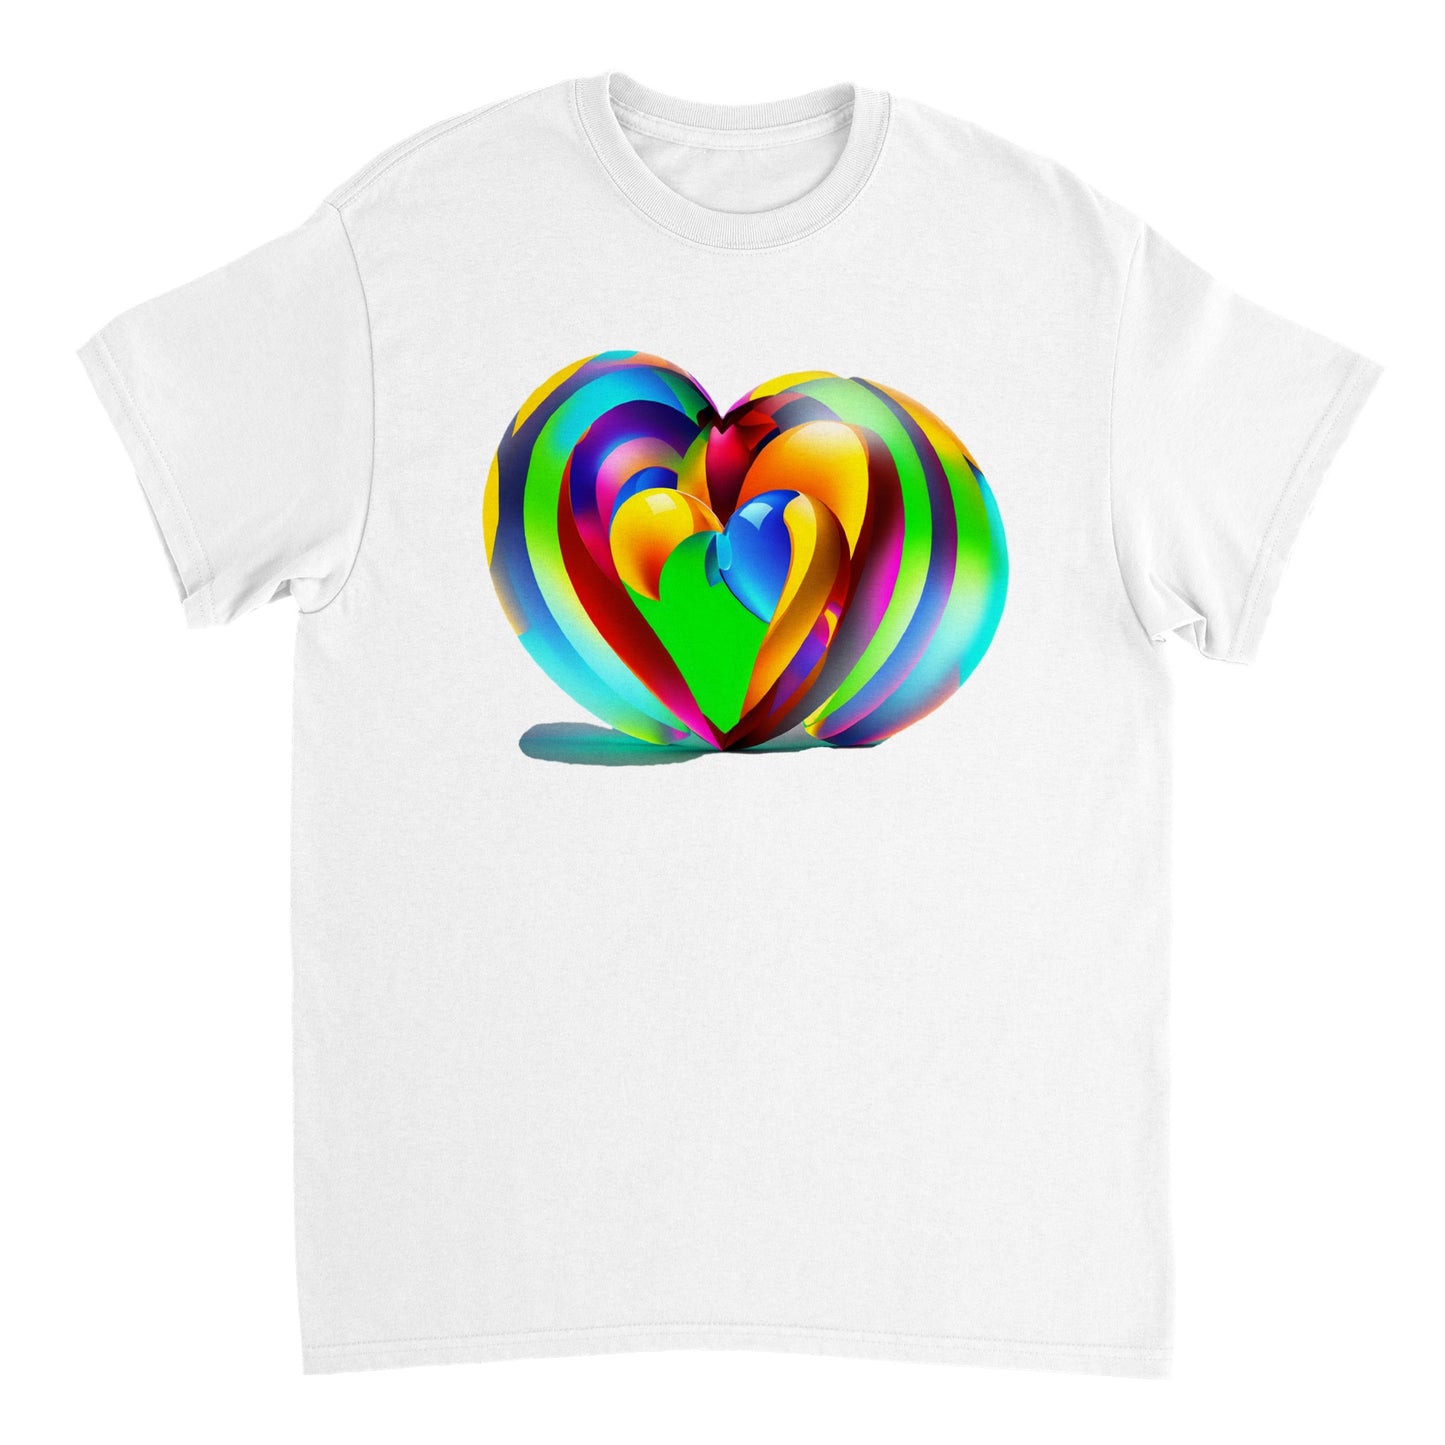 Love Heart - Heavyweight Unisex Crewneck T-shirt 46